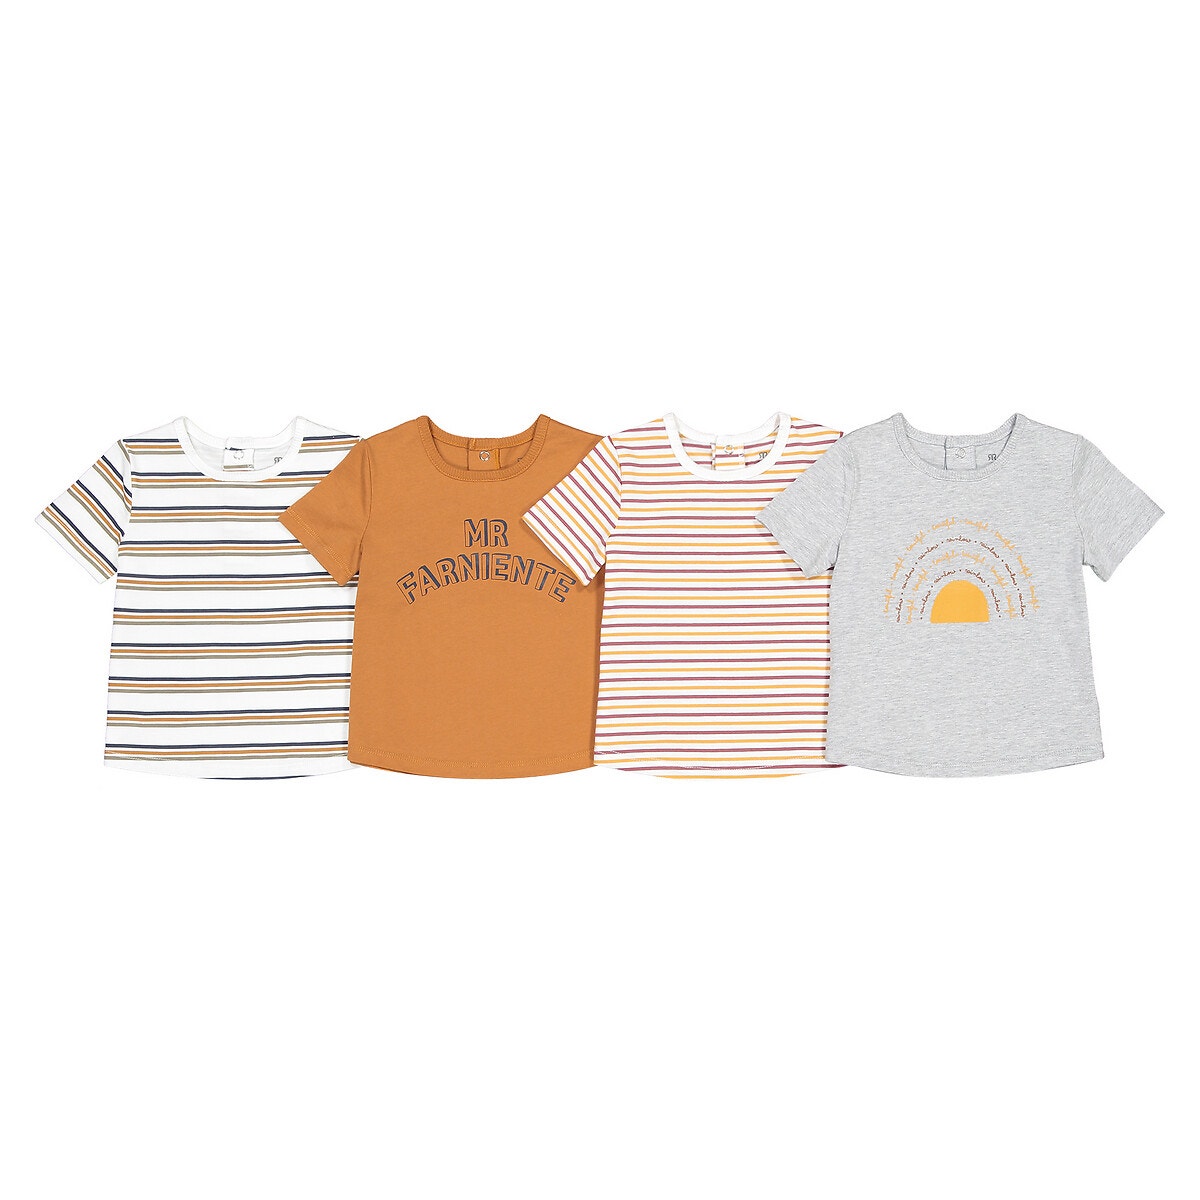 ΠΑΙΔΙ | Μπλούζες & Πουκάμισα | Τοπ Σετ 4 μακρυμάνικες μπλούζες από βιολογικό βαμβάκι, 1 μηνός - 4 ετών